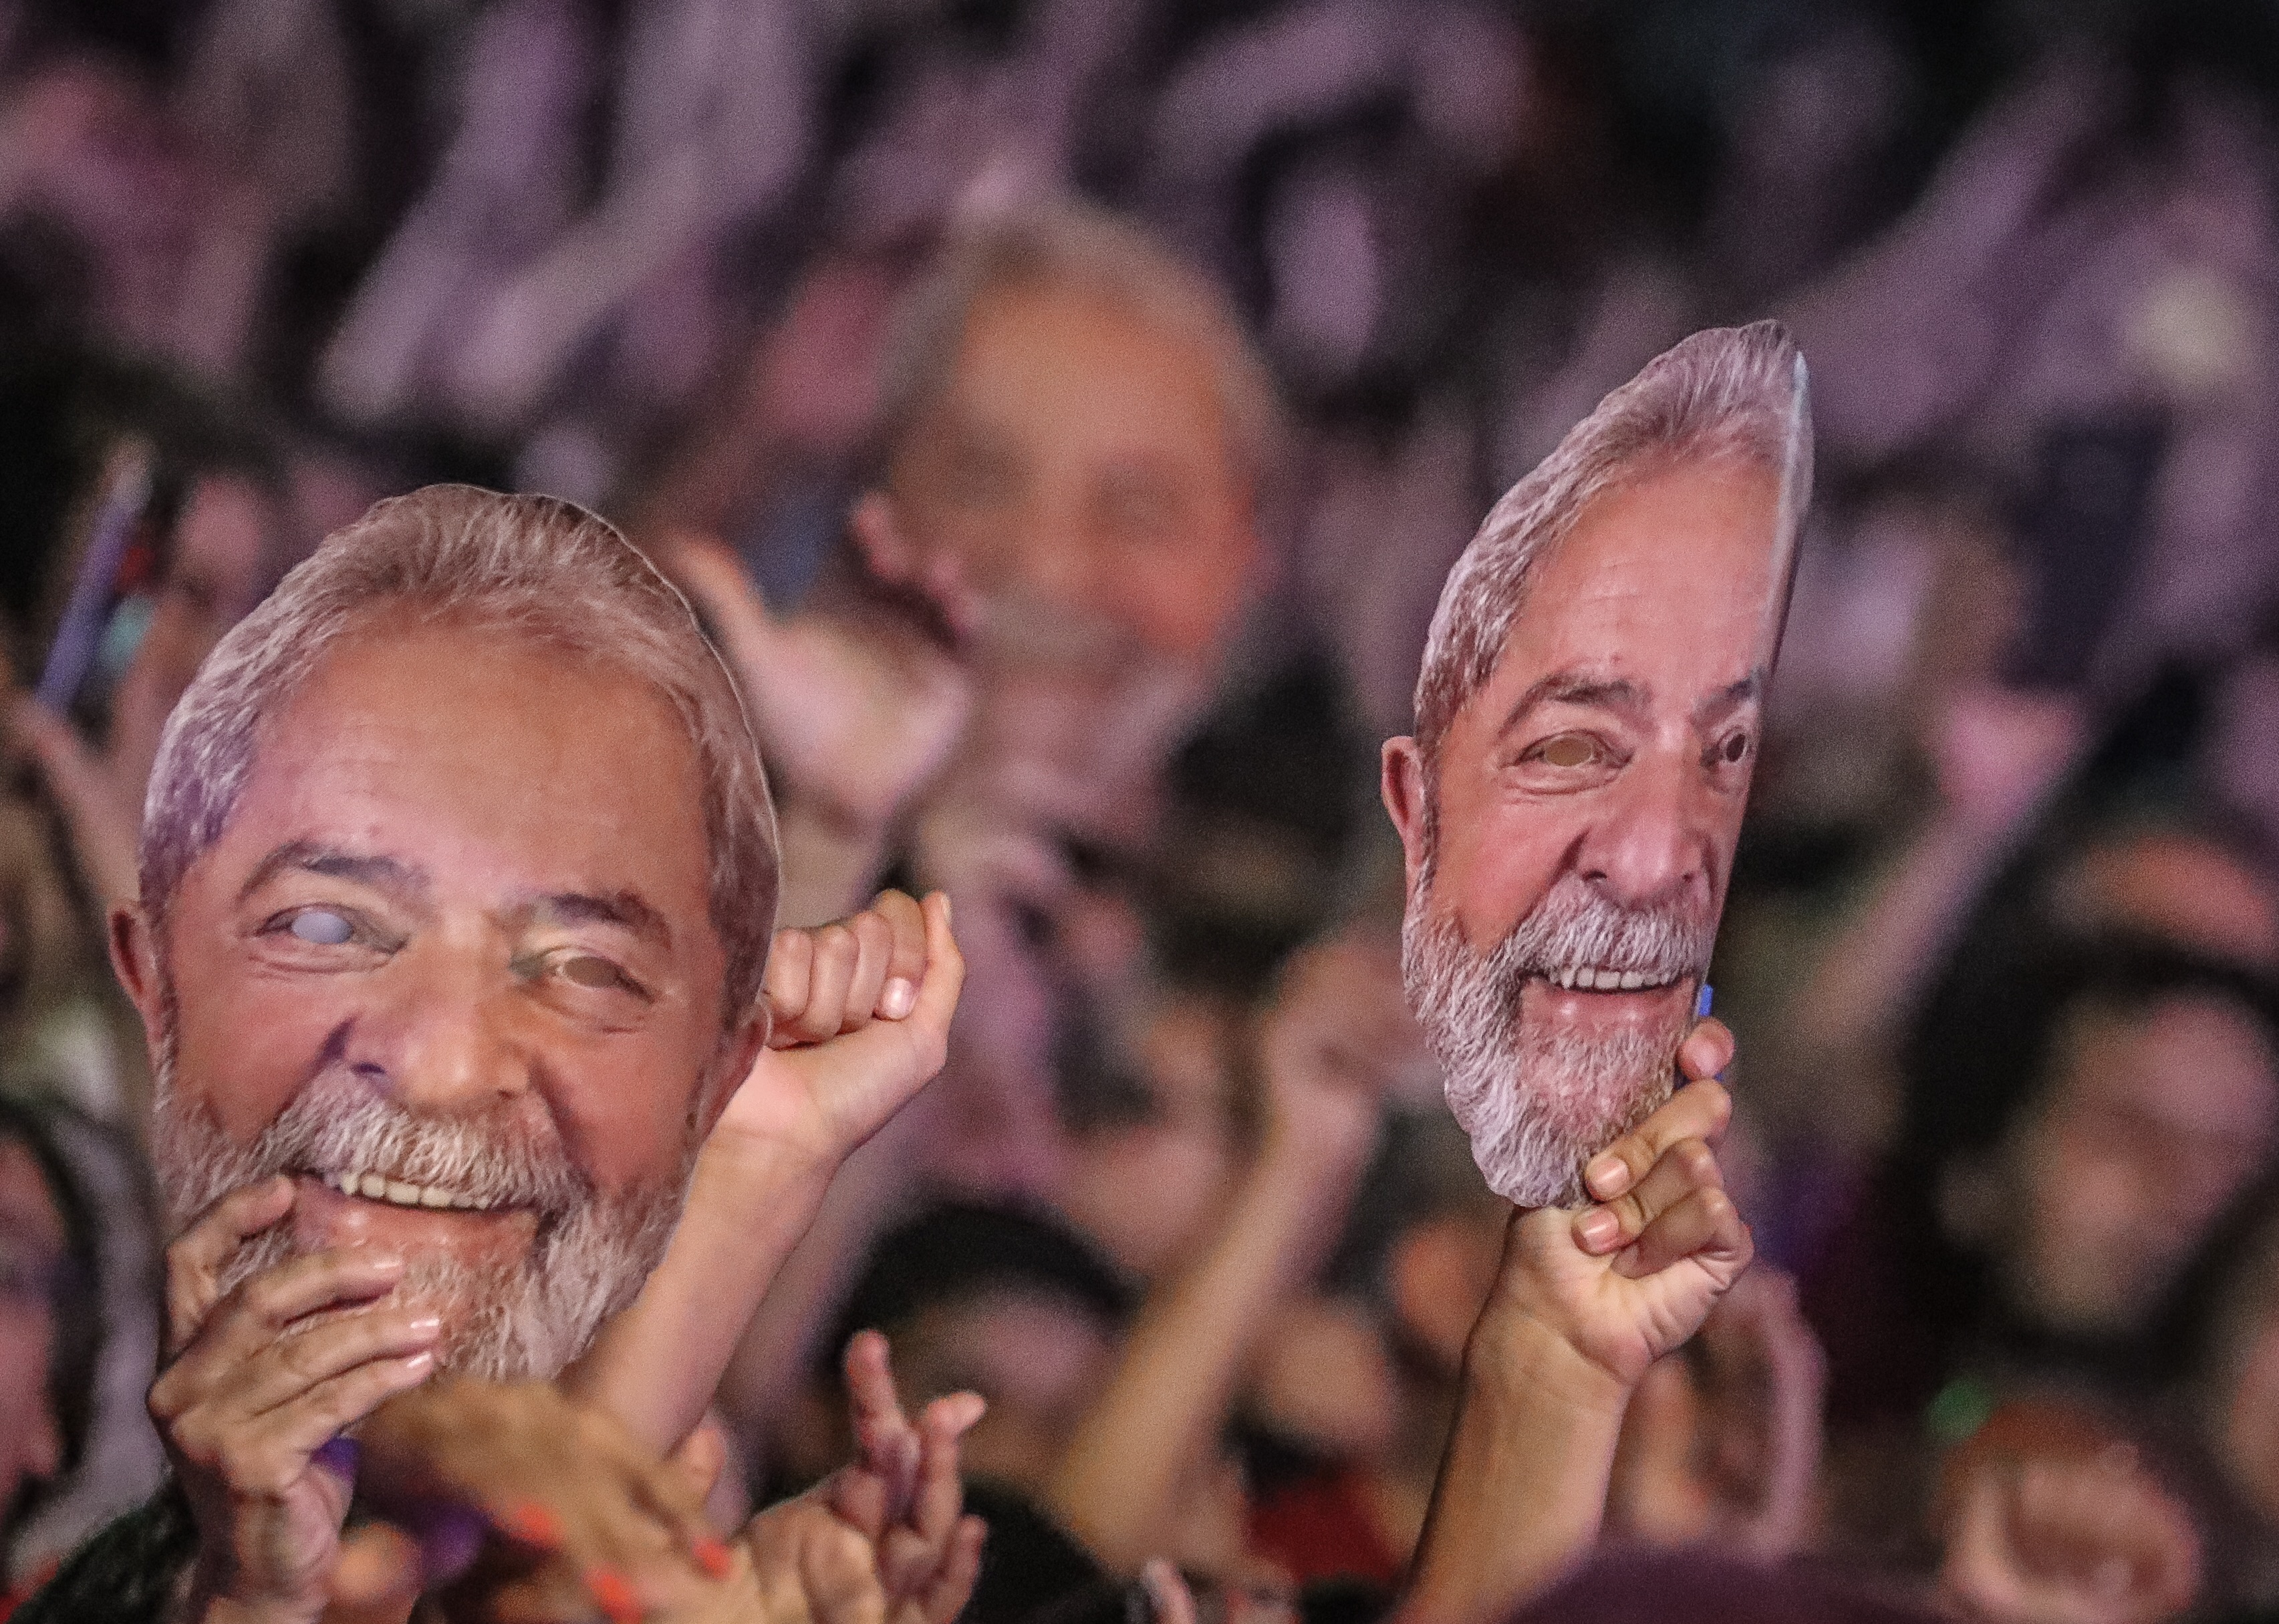 Veja aqui as fotos do Festival Lula Livre no Rio de Janeiro